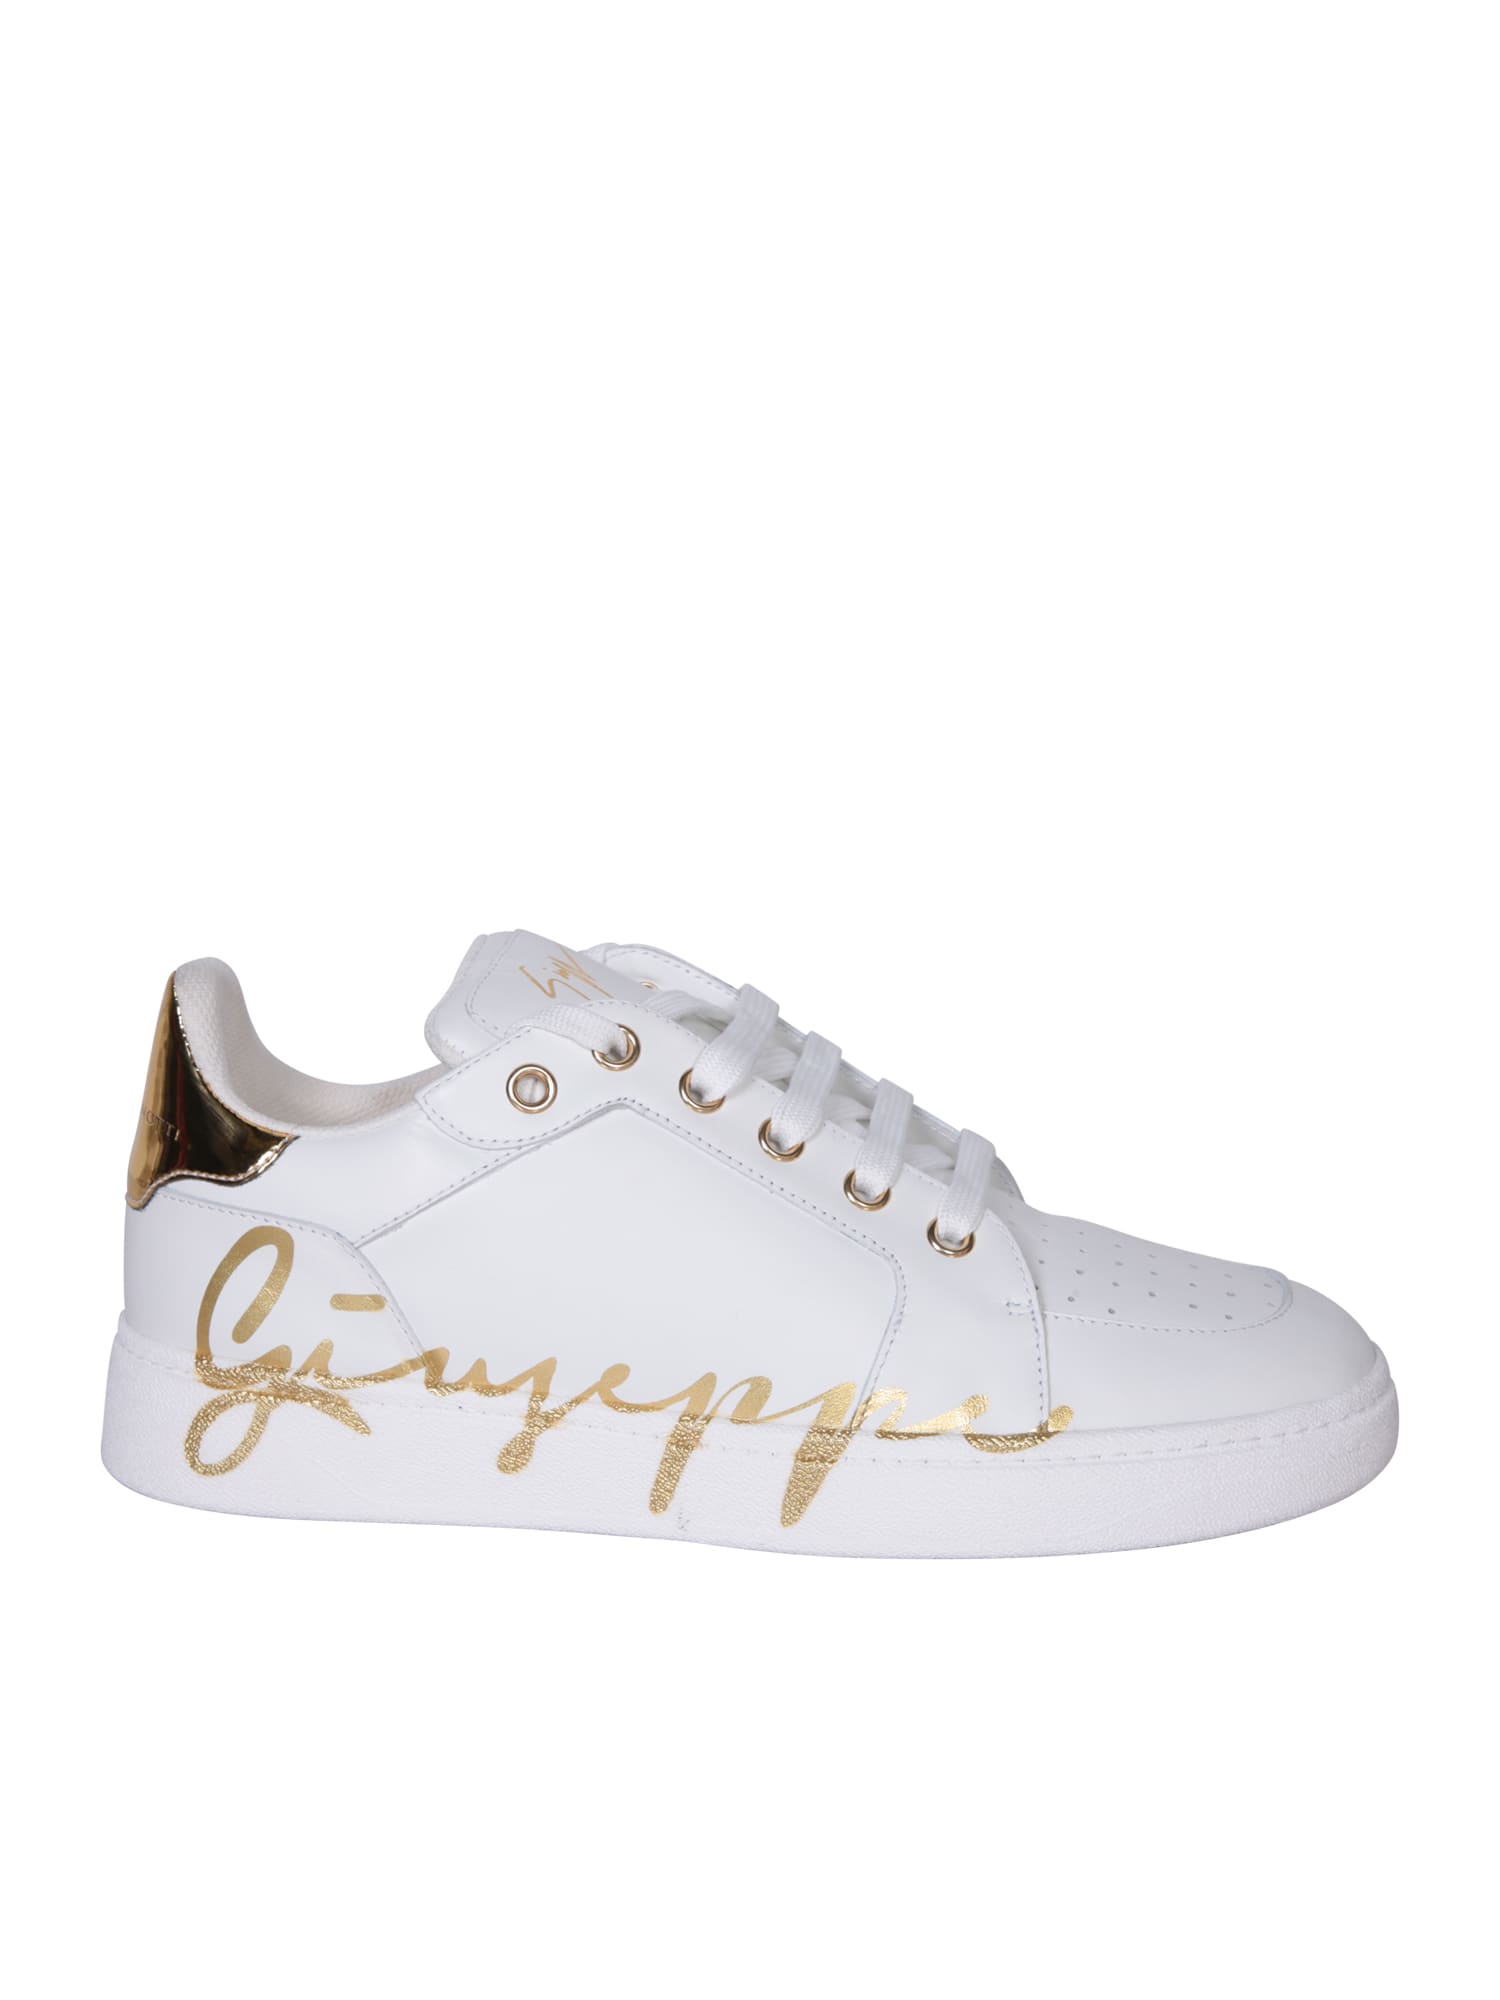 Giuseppe Zanotti Gz94 Black/gold Sneakers